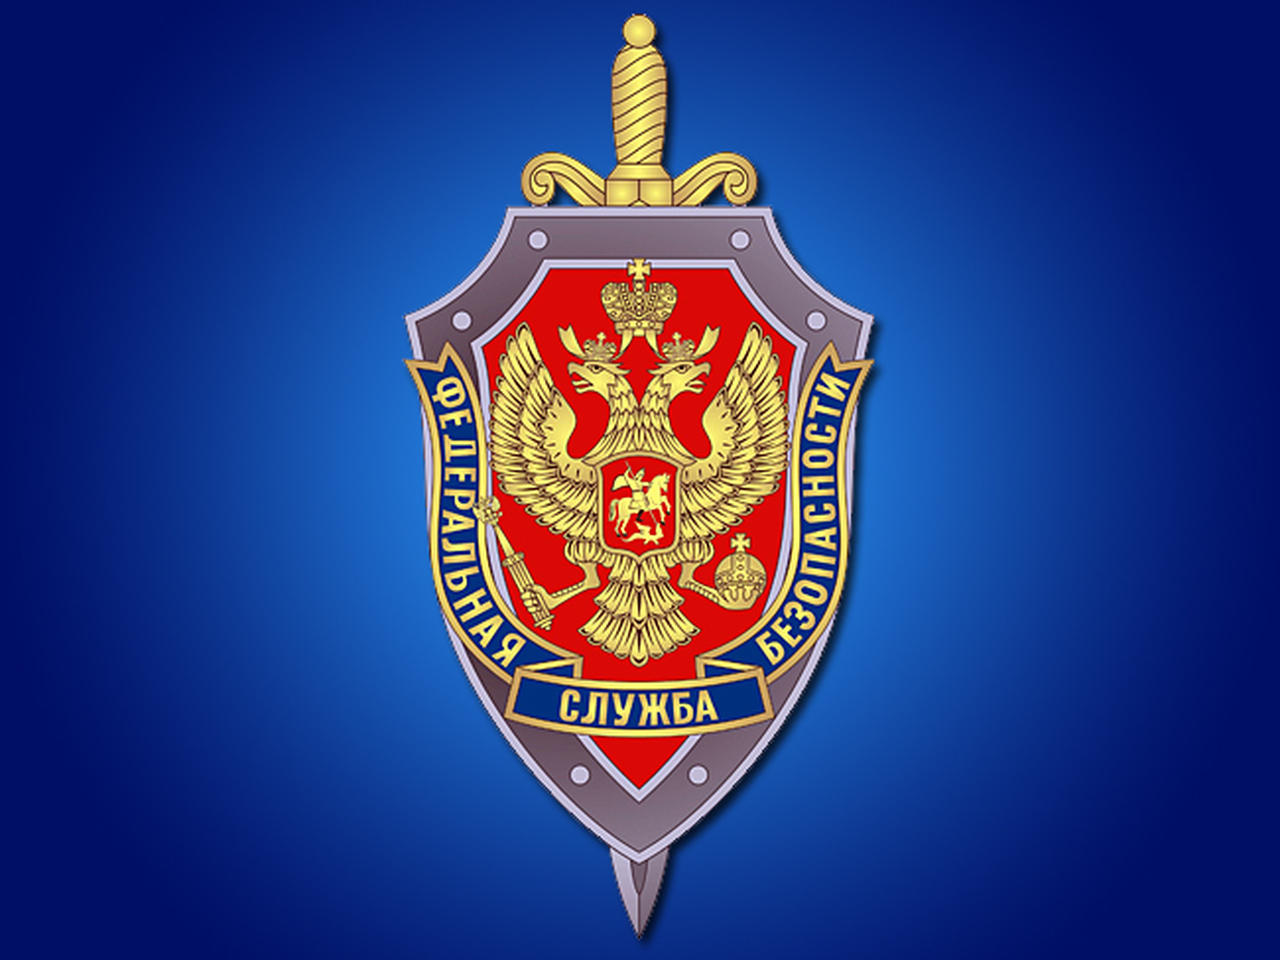 Министерство государственной безопасности россии